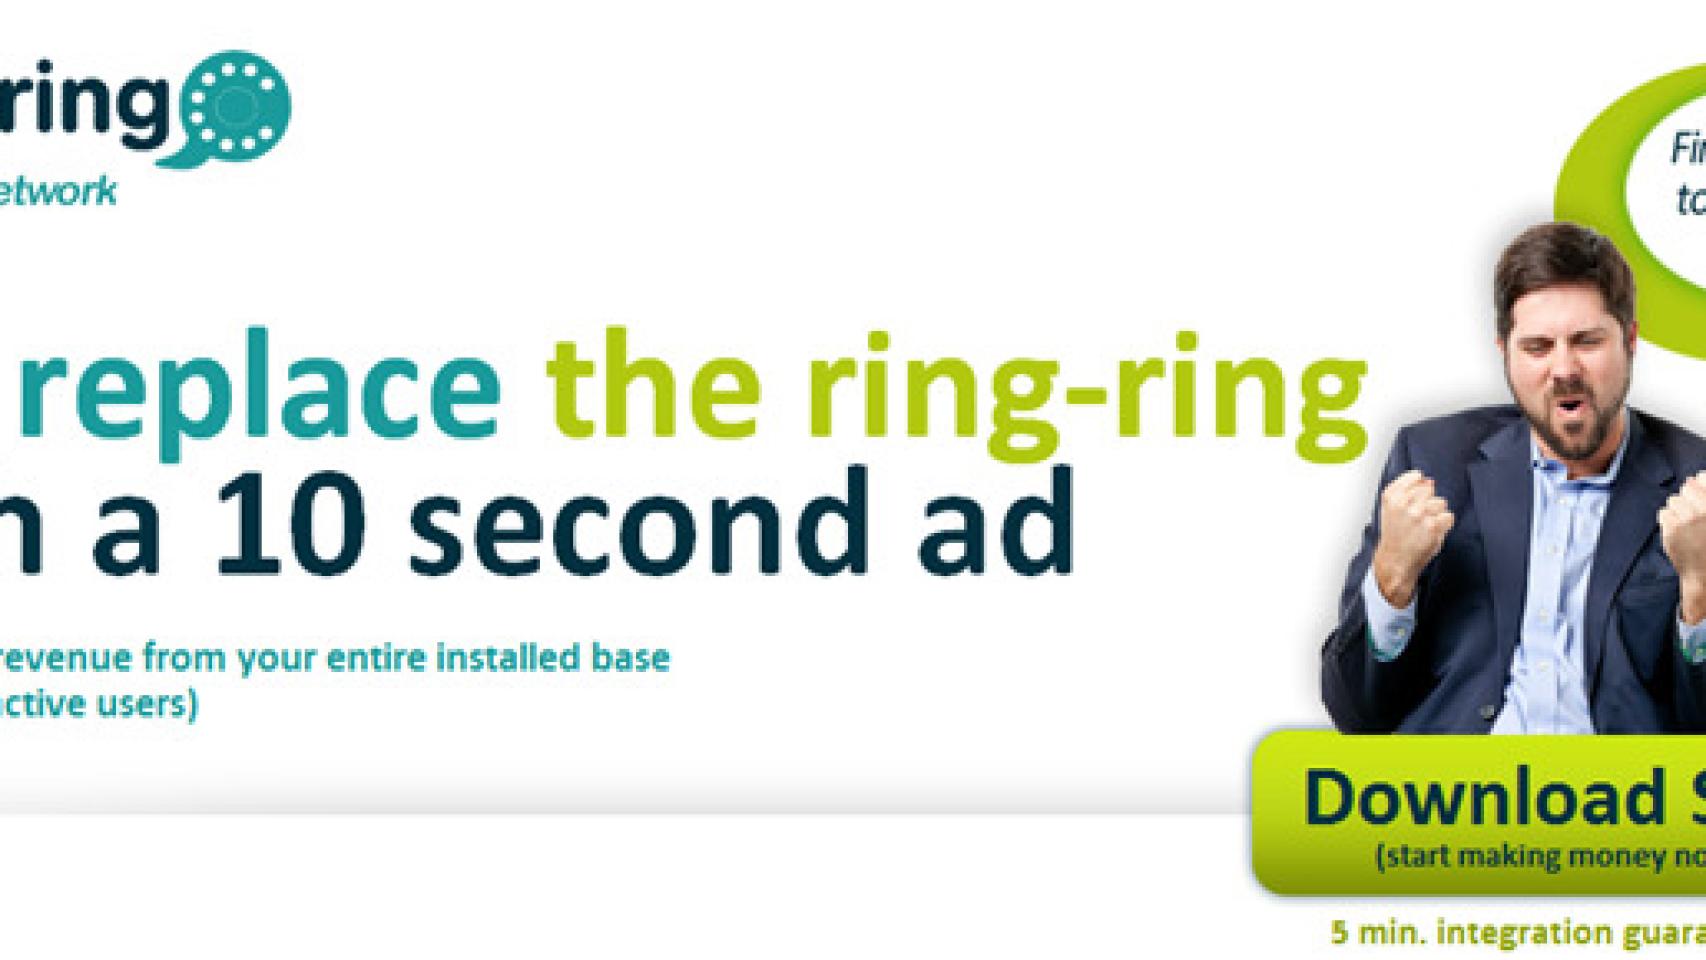 Más publicidad intrusiva: SellARing te remplaza el tono de llamada por publicidad